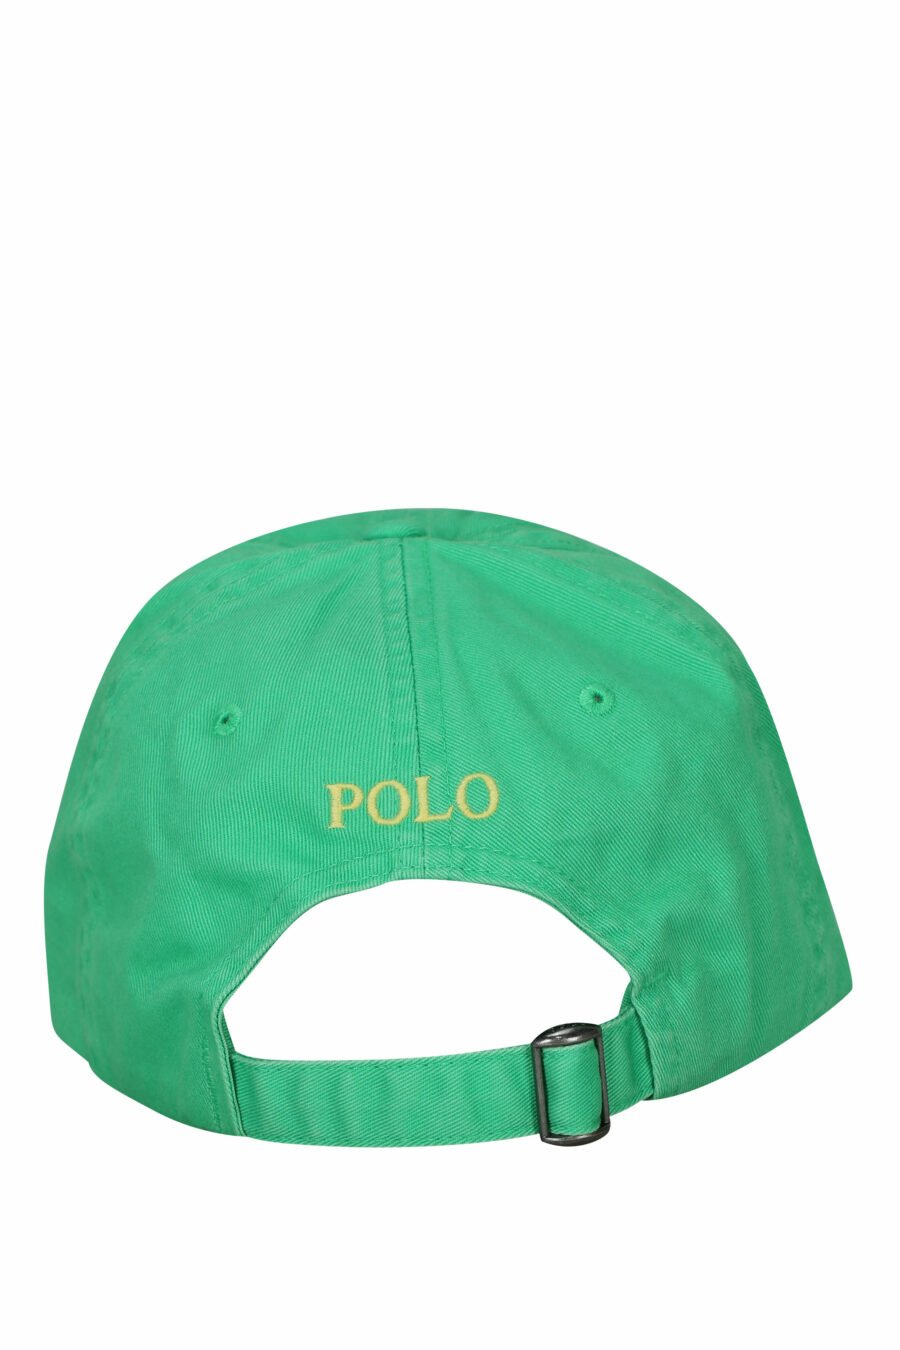 Casquette verte avec mini-logo "polo" - 3616535875623 1